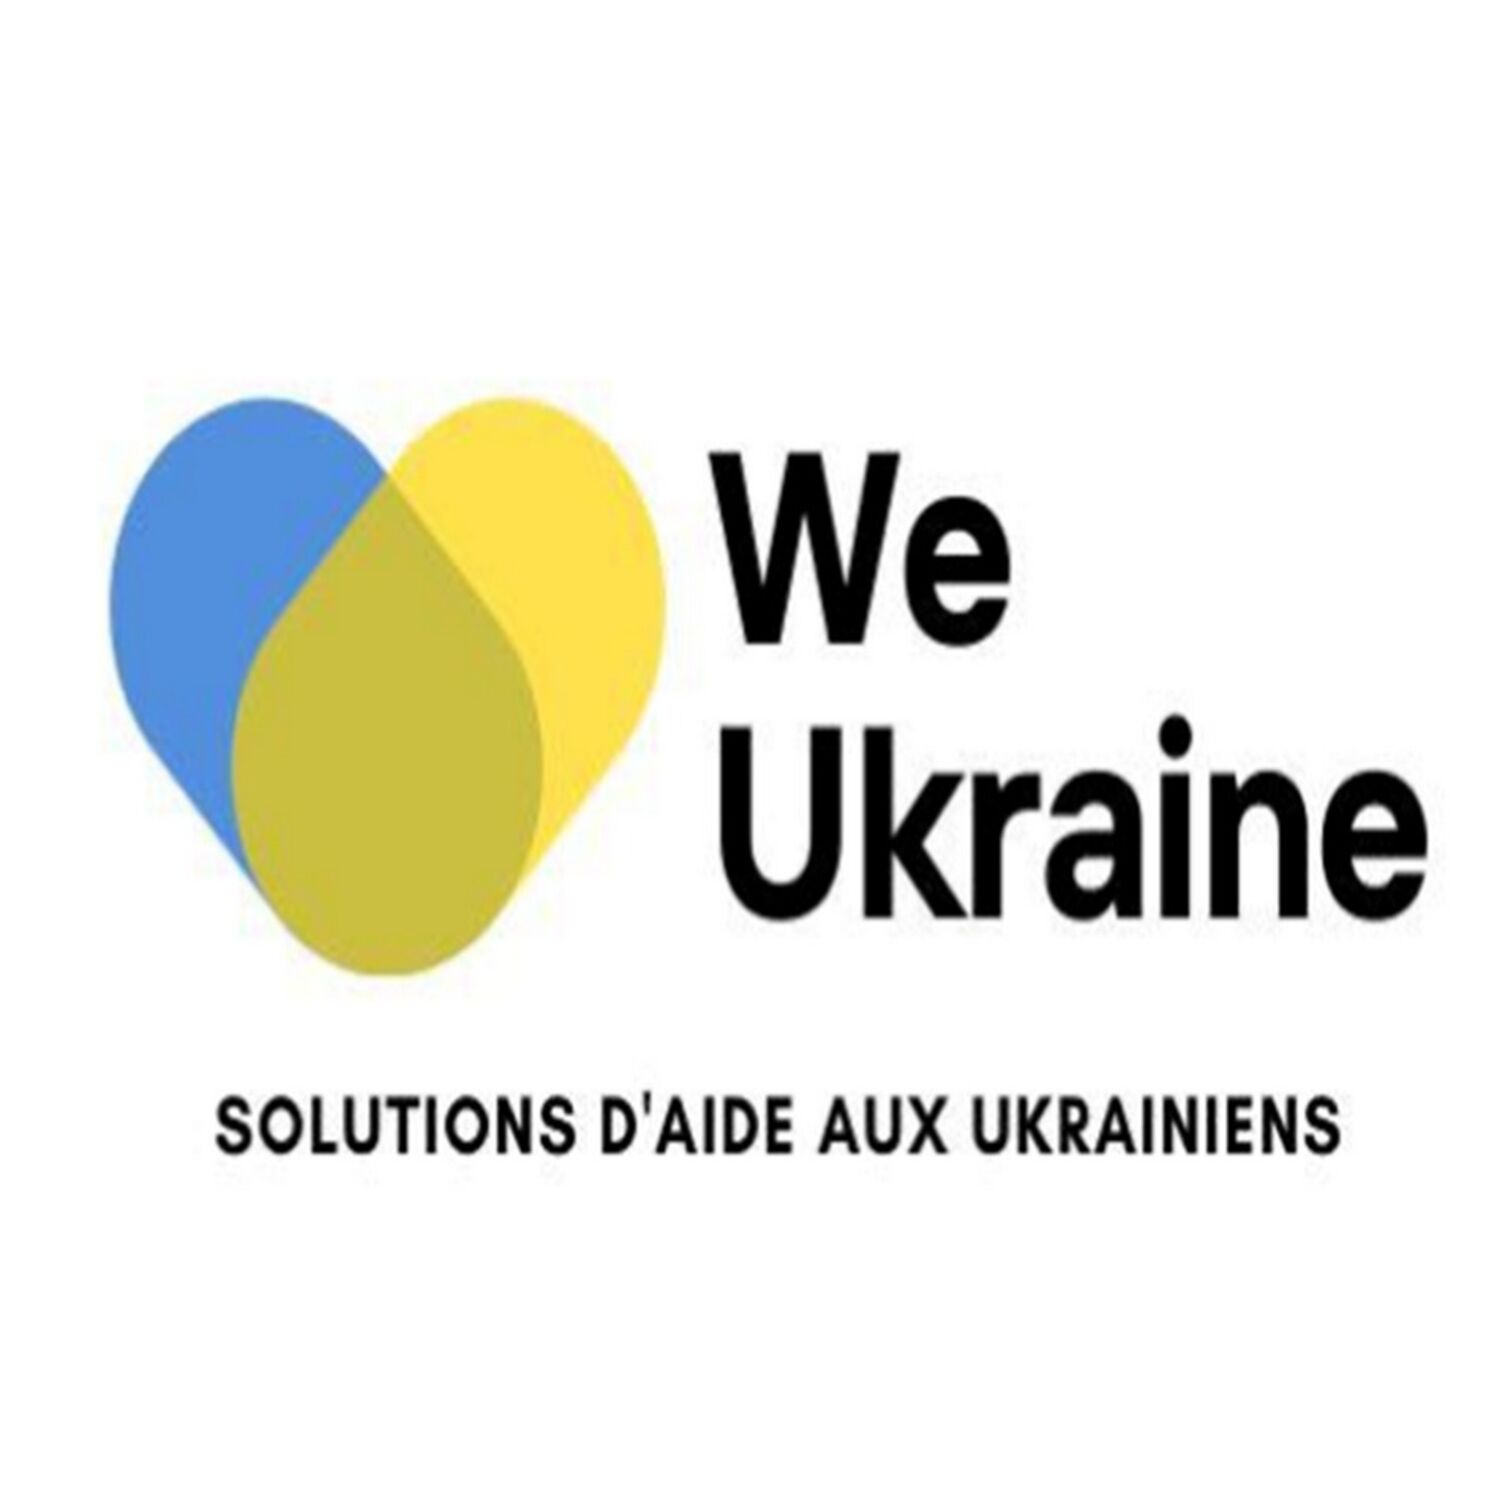 We Ukraine la Plate-forme solidaire